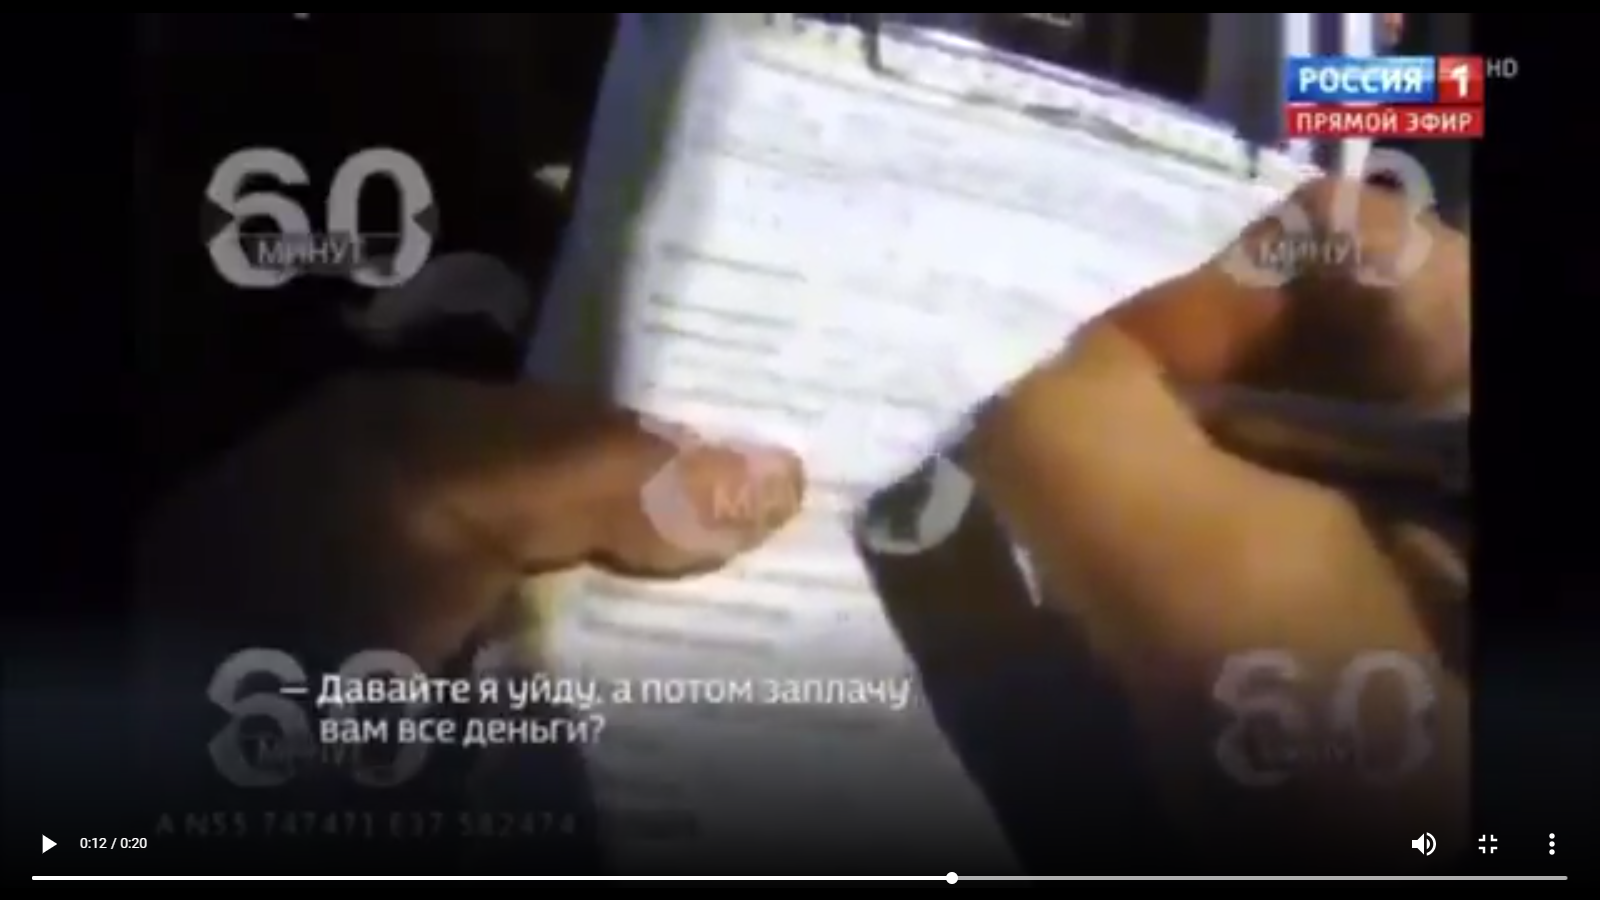 Видео дня: Михаил Ефремов будто бы предлагал взятку сотруднику ГИБДД